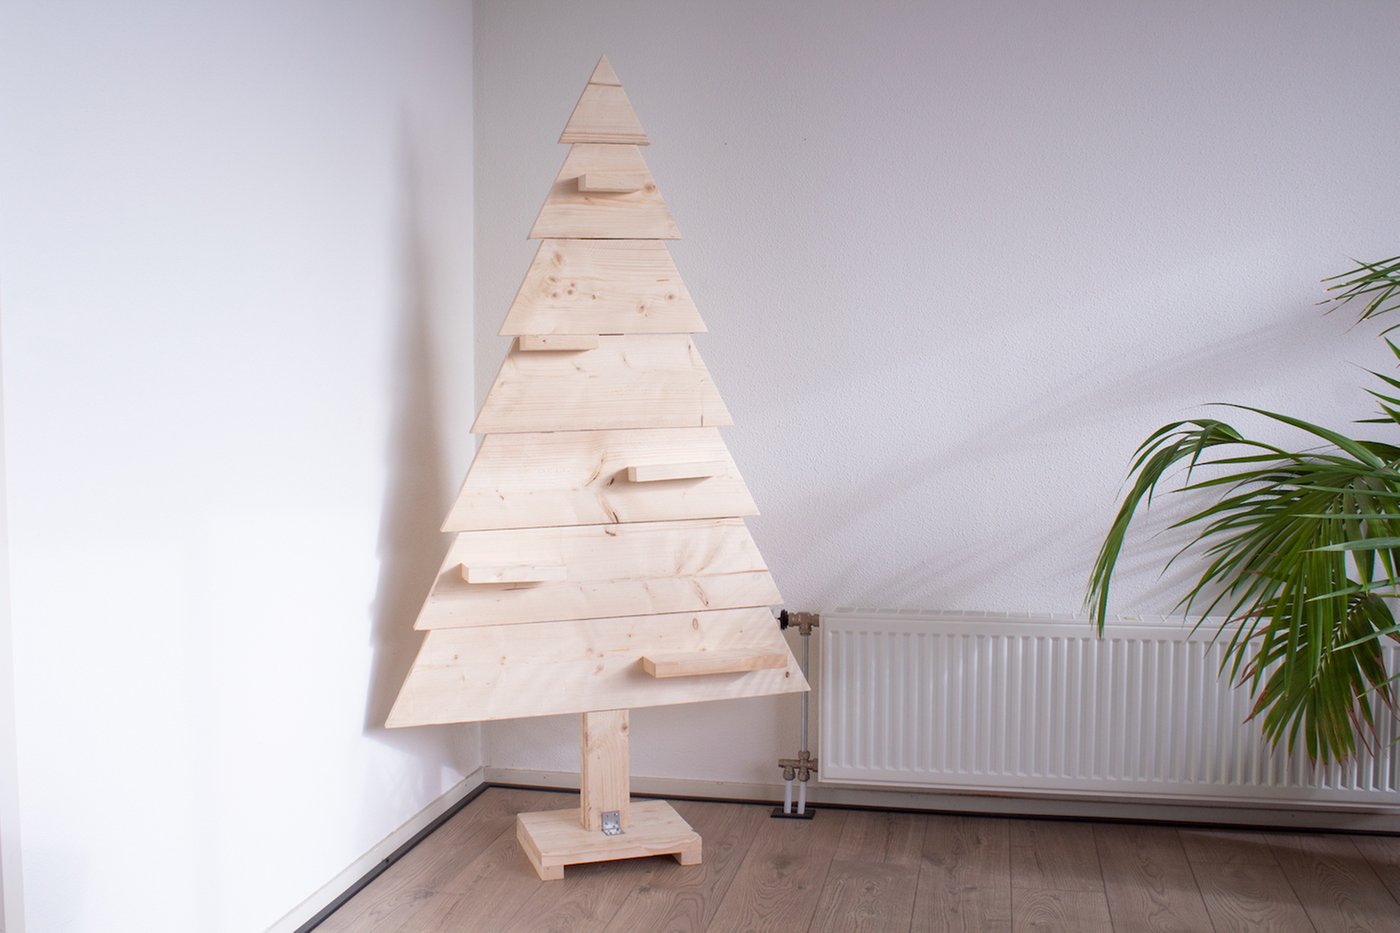 houten_kerstboom_fins_vuren_hout